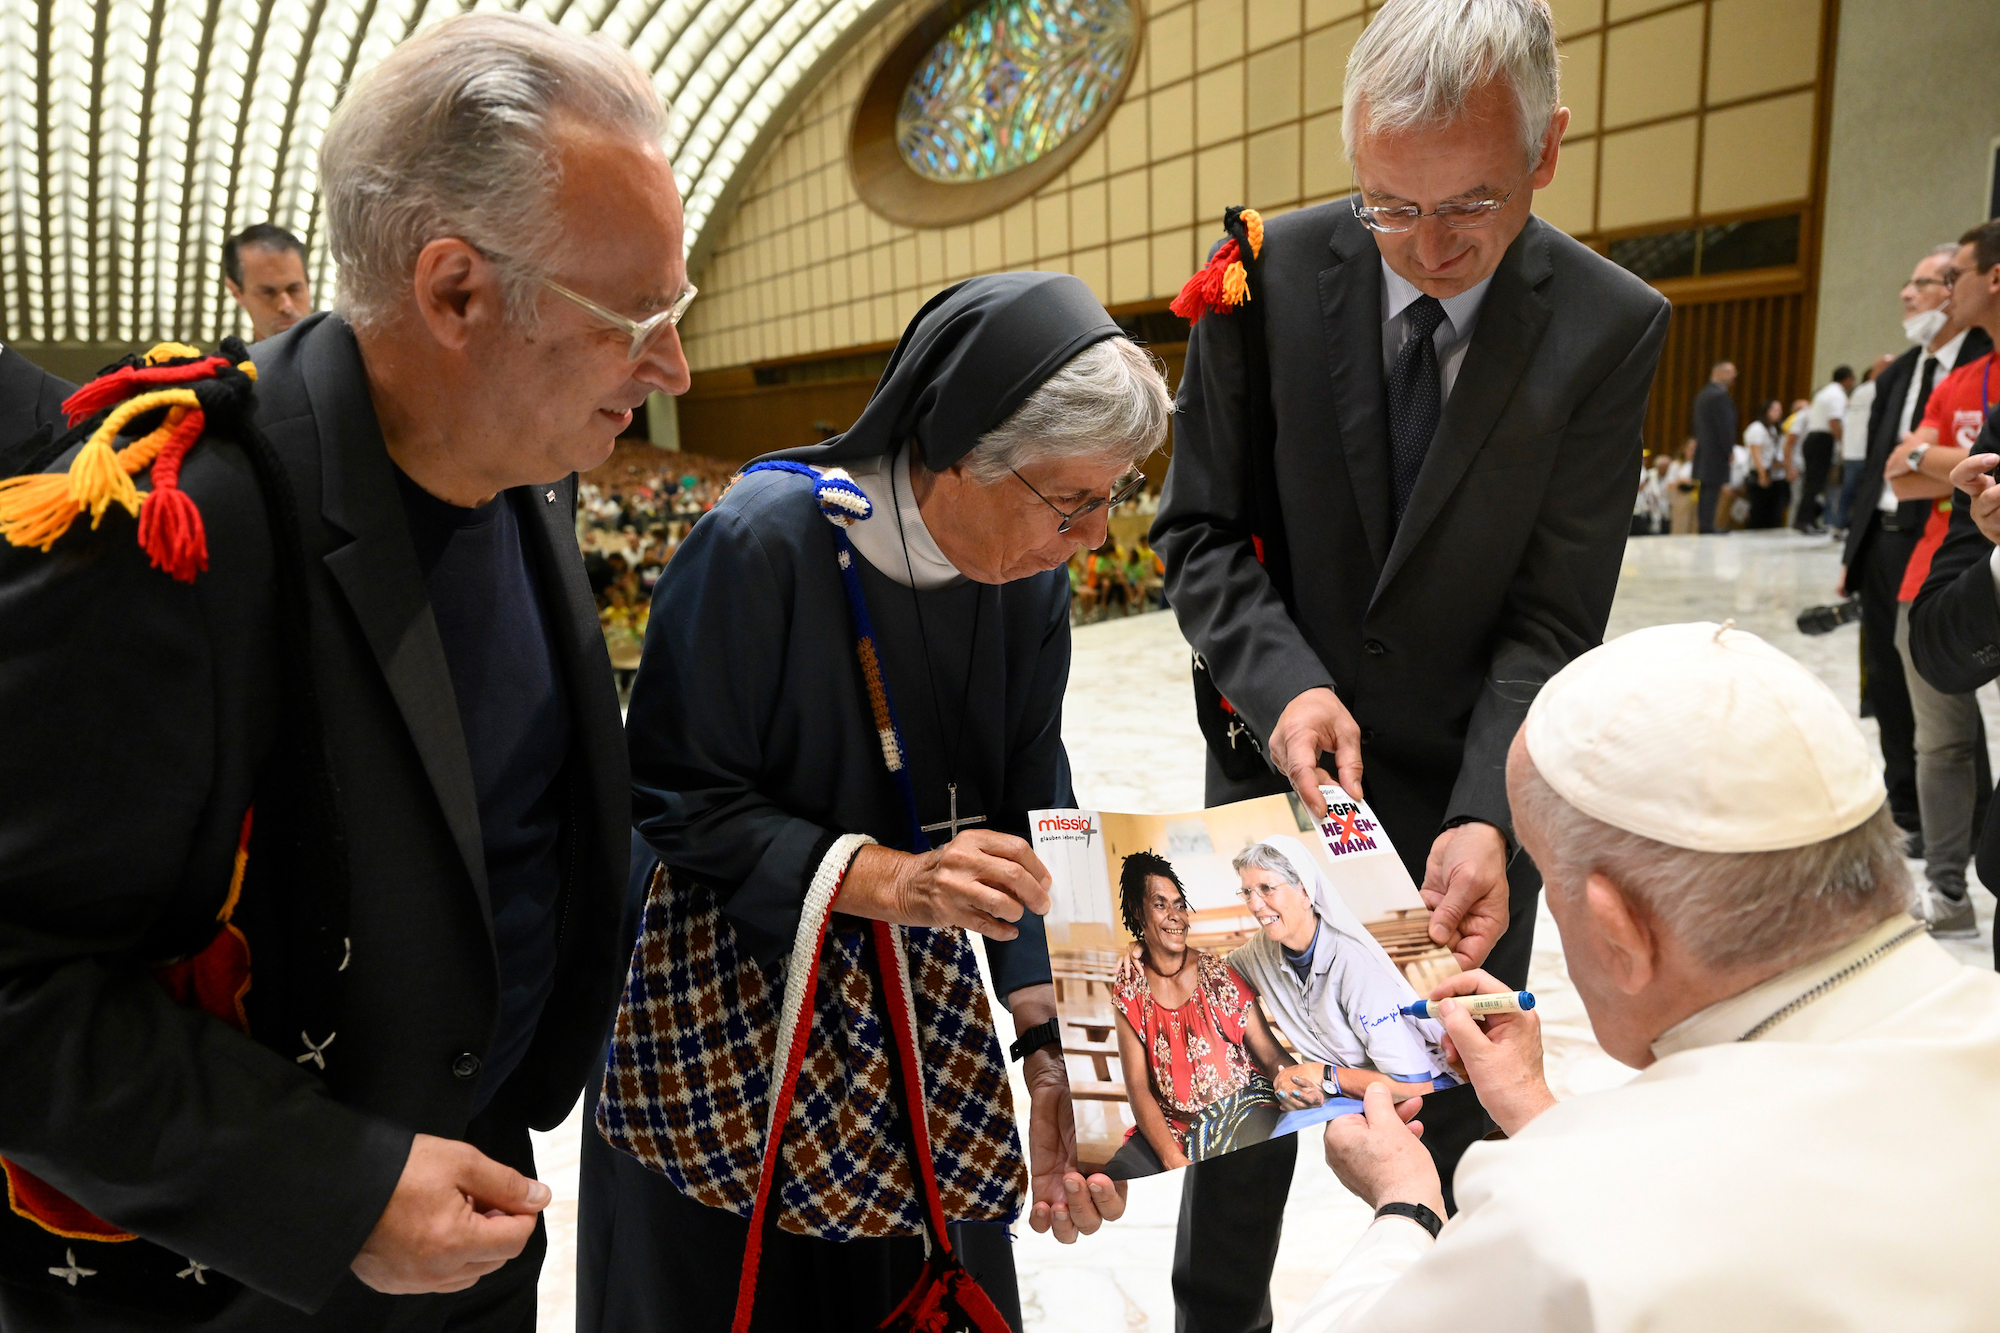 Anfang August erhielt Schwester Lorena eine Audienz bei Papst Franziskus, um ihr Projekt vorzustellen. Papst Franziskus signiert das Kampagnen-Foto, das sie und Christina zeigt. (c) Simone Risoluti/Vatican Media